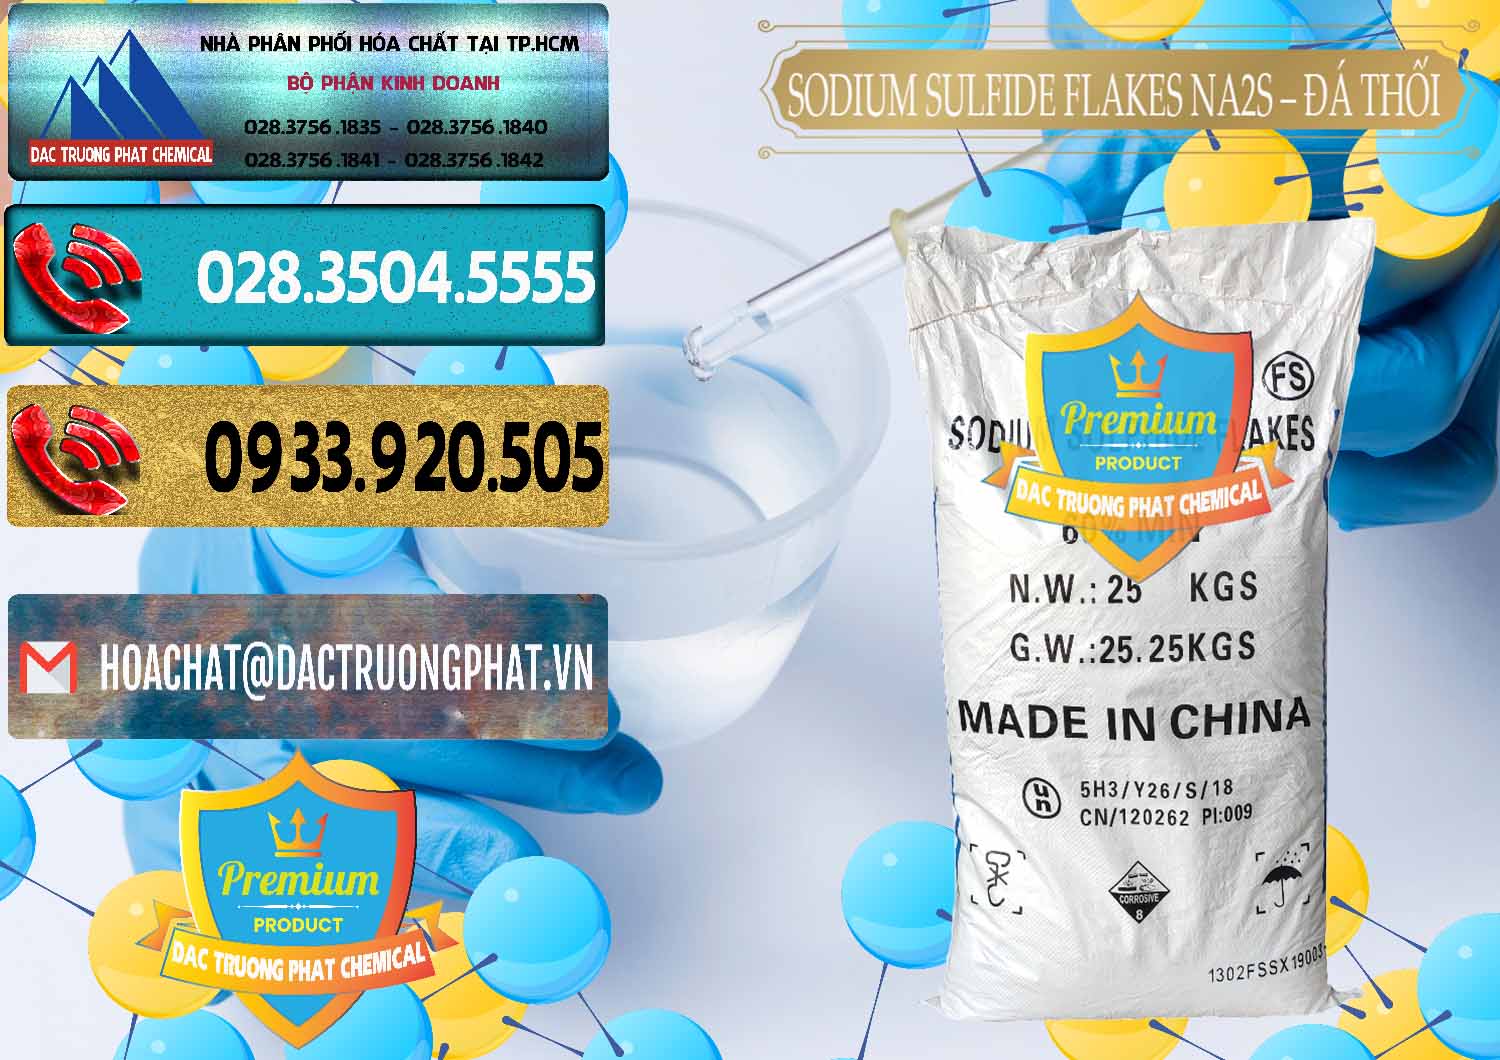 Đơn vị chuyên cung ứng ( bán ) Sodium Sulfide Flakes NA2S – Đá Thối Đỏ Trung Quốc China - 0150 - Cung cấp & phân phối hóa chất tại TP.HCM - hoachatdetnhuom.com